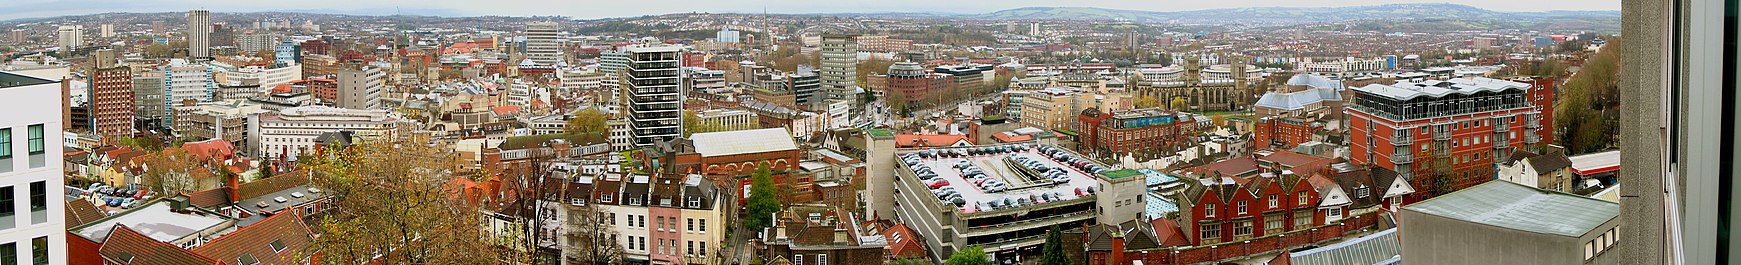 Een panoramisch uitzicht over een stadsbeeld van kantoorgebouwen, oude gebouwen, kerktorens en een parkeergarage.  In de verte zijn heuvels.